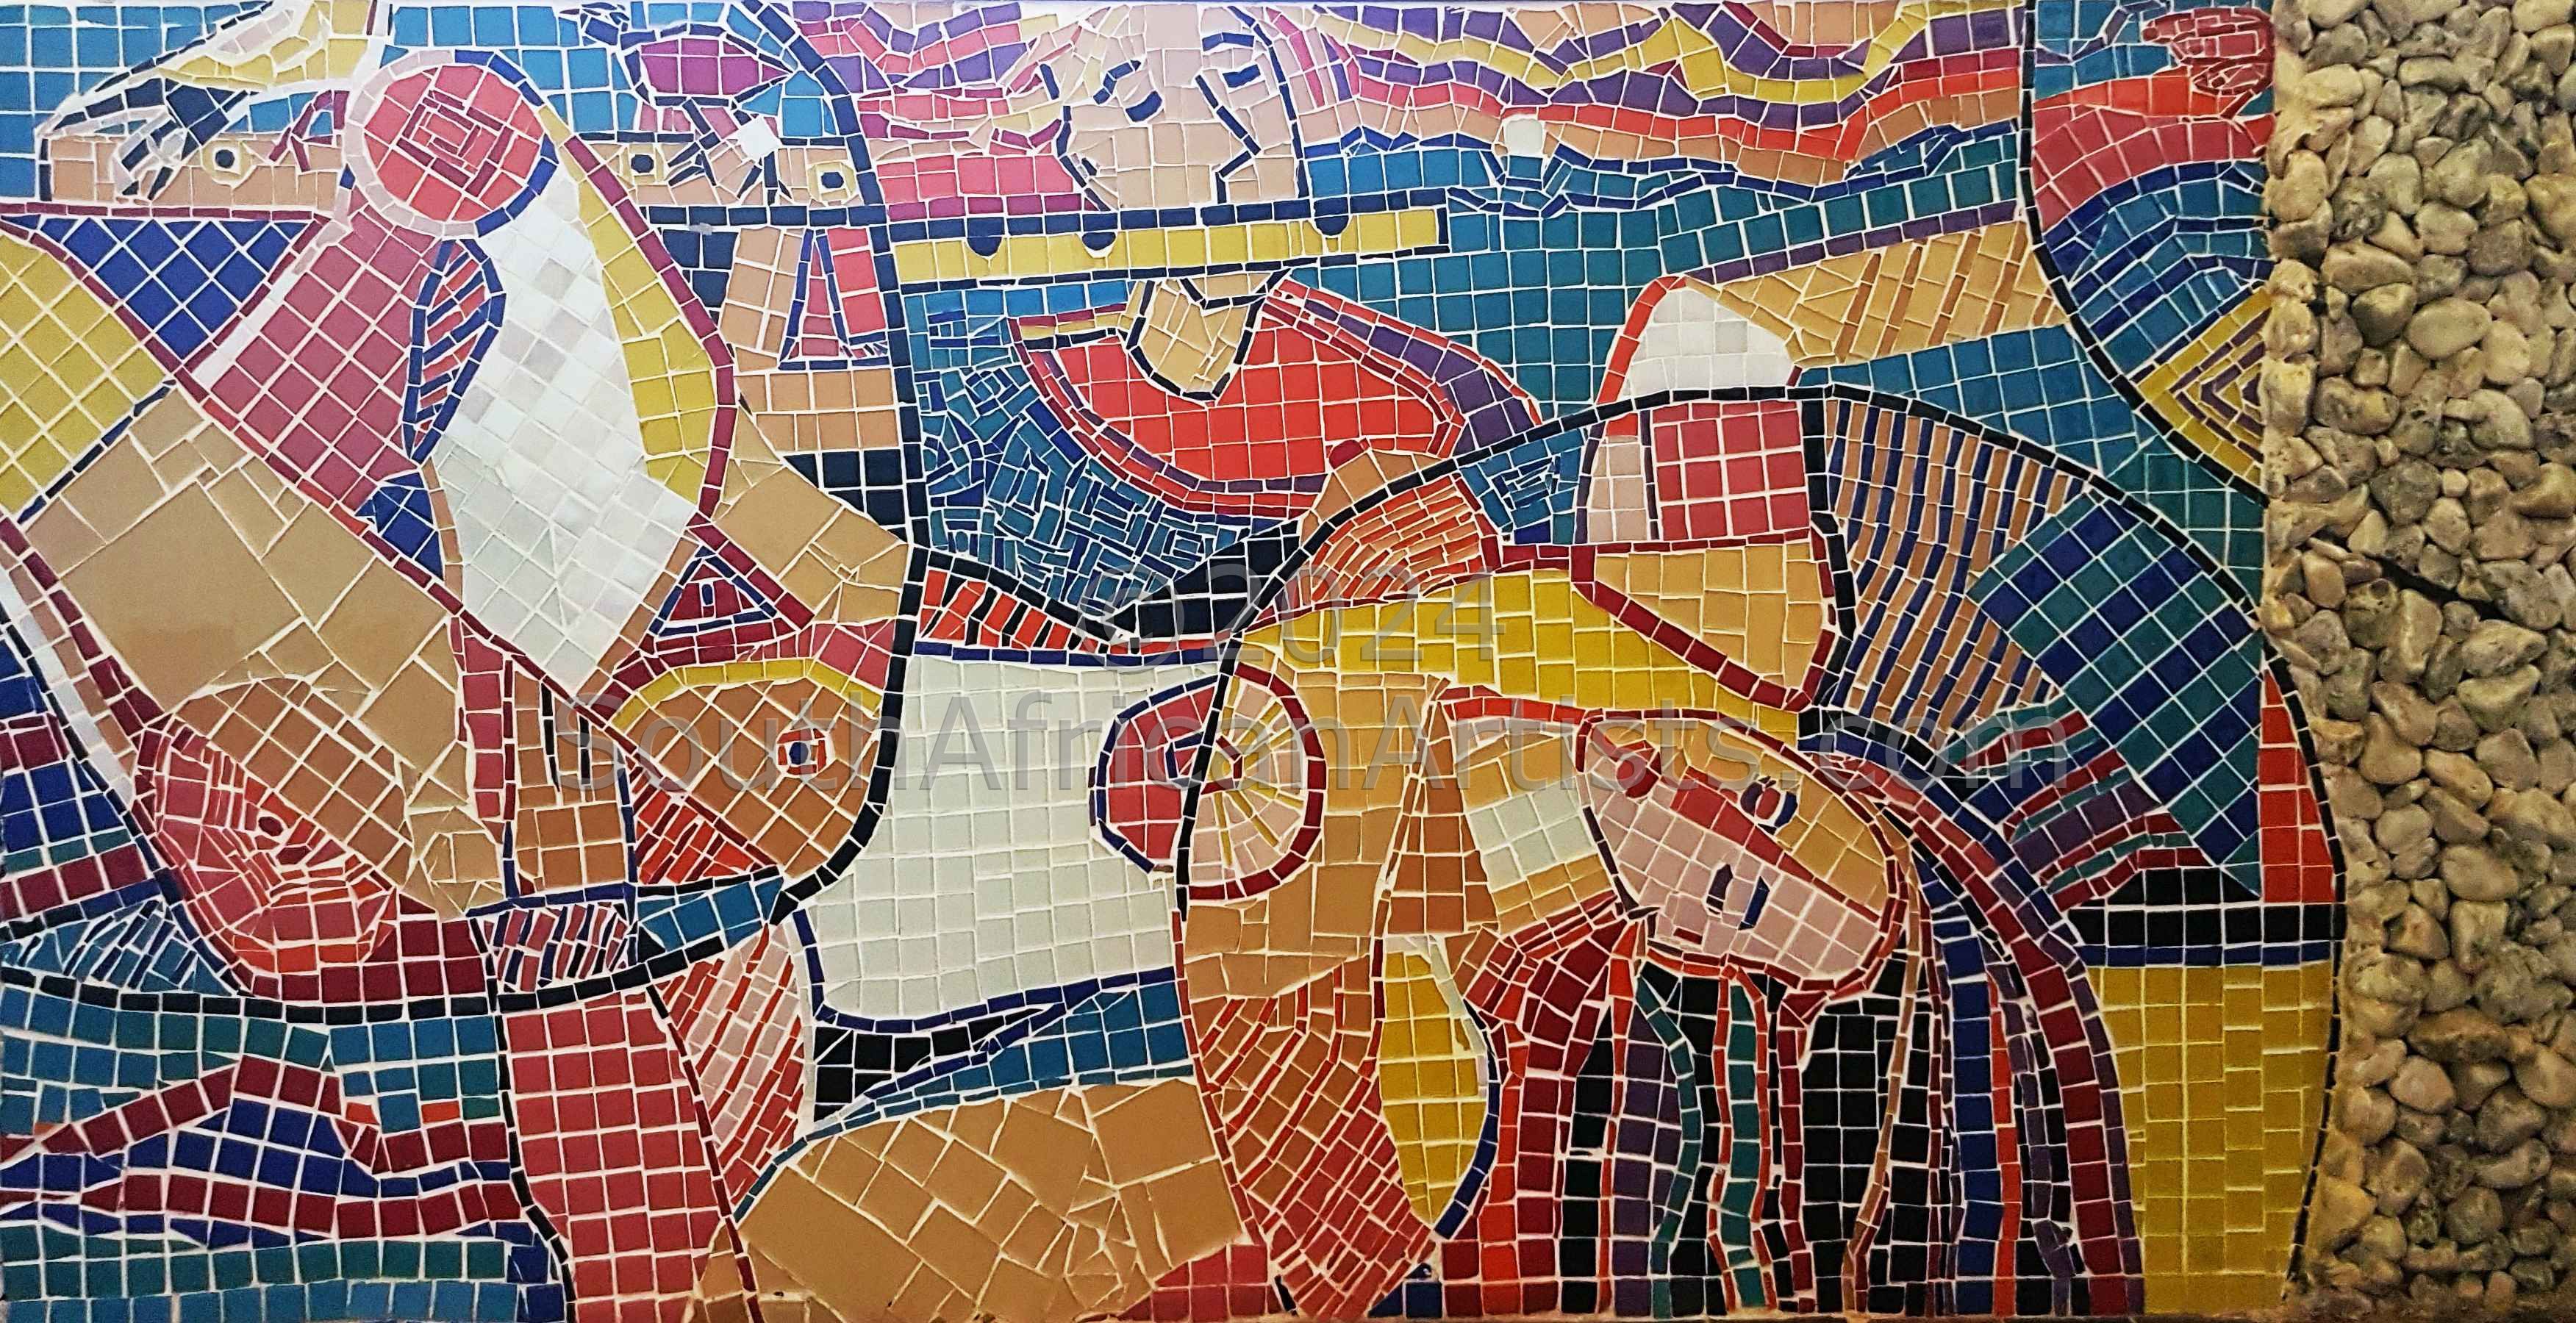 Fan Art-Isabel Le Roux-Mosaic 